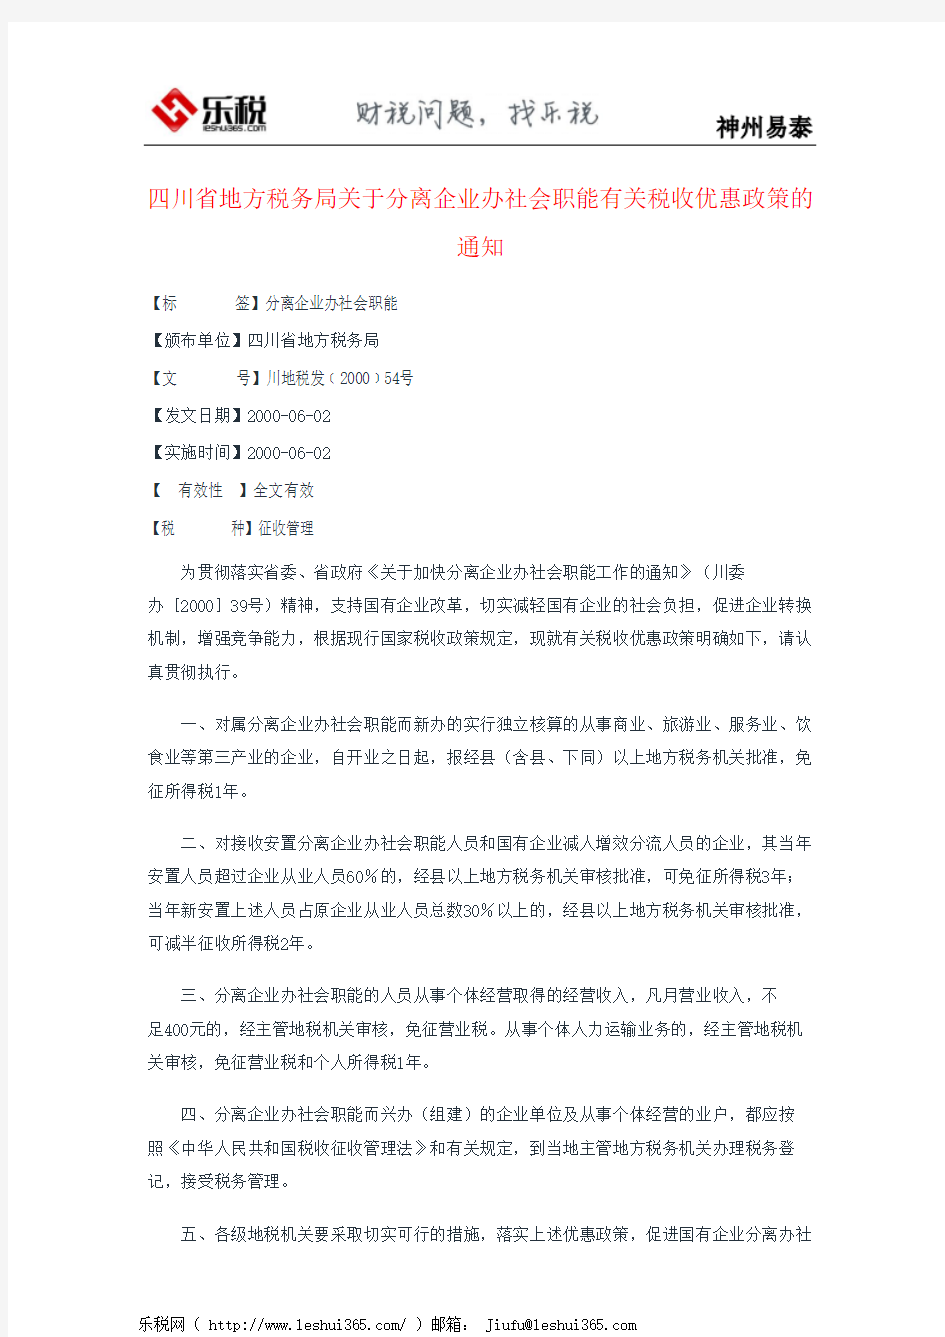 四川省地方税务局关于分离企业办社会职能有关税收优惠政策的通知